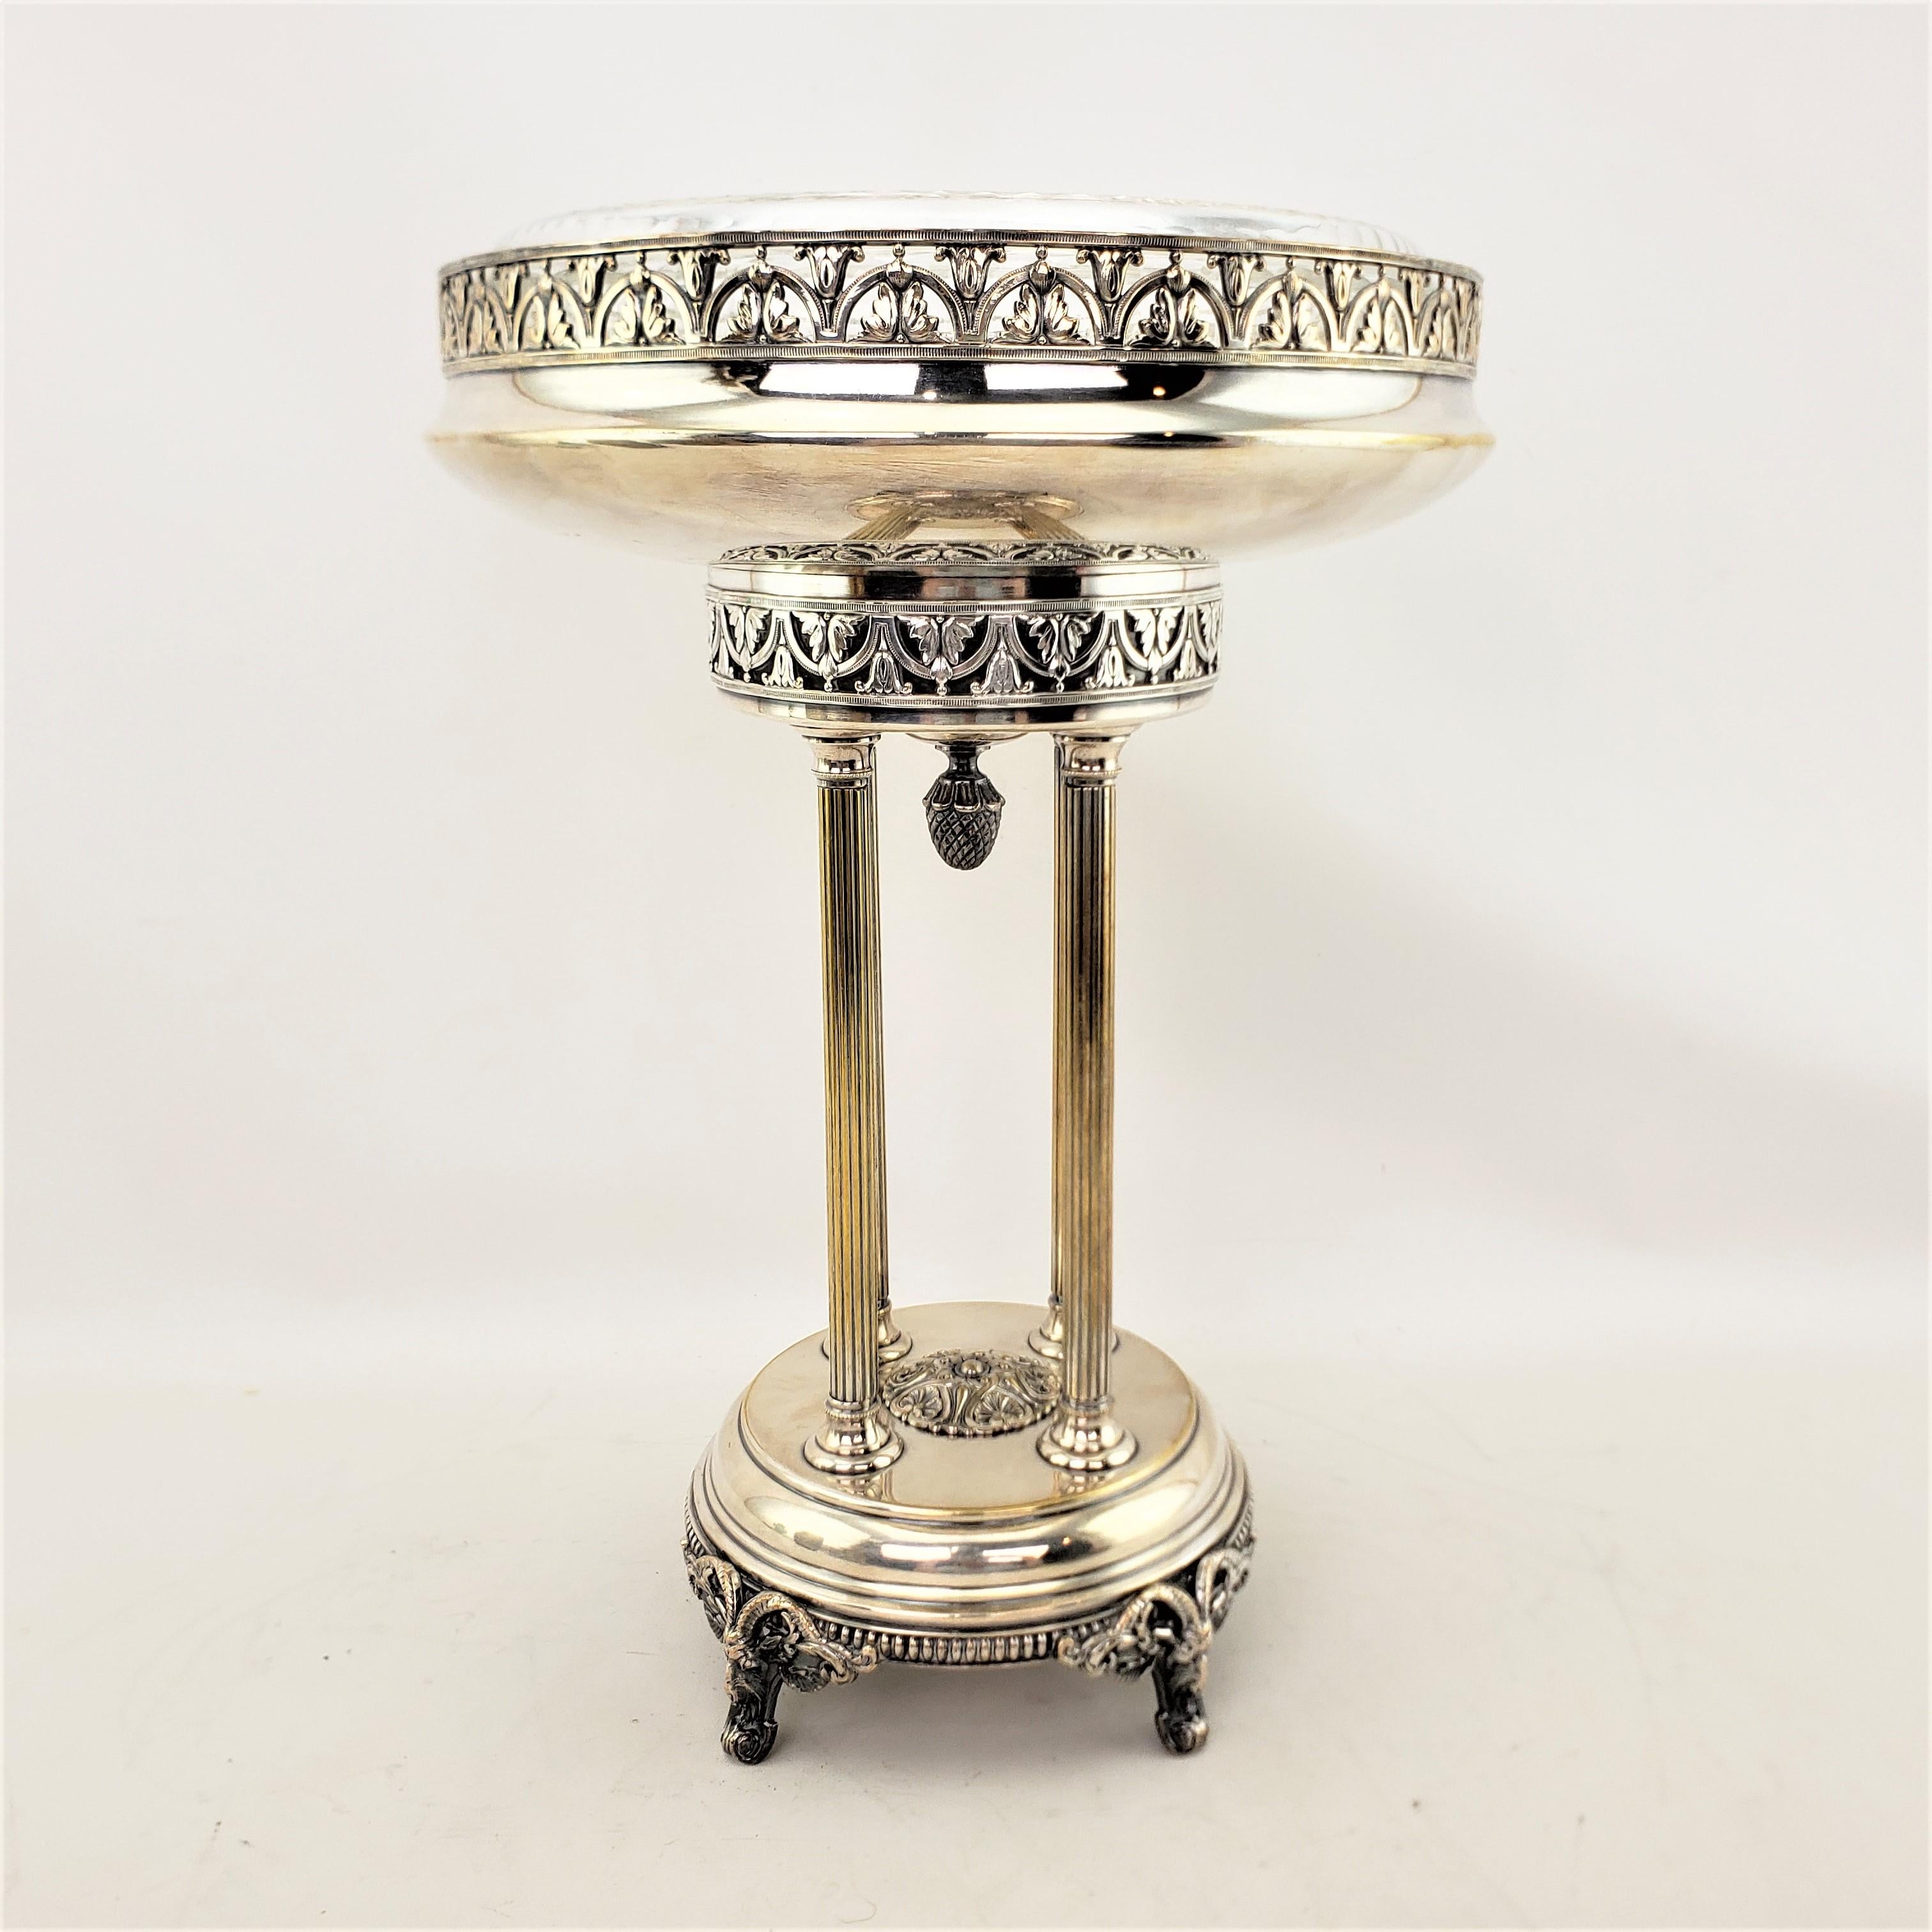 Ce centre de table antique en métal argenté est signé et poinçonné par Phenix. On suppose qu'il provient de France et qu'il date d'environ 1920, dans un style néoclassique. La partie supérieure de la pièce centrale consiste en une galerie ronde